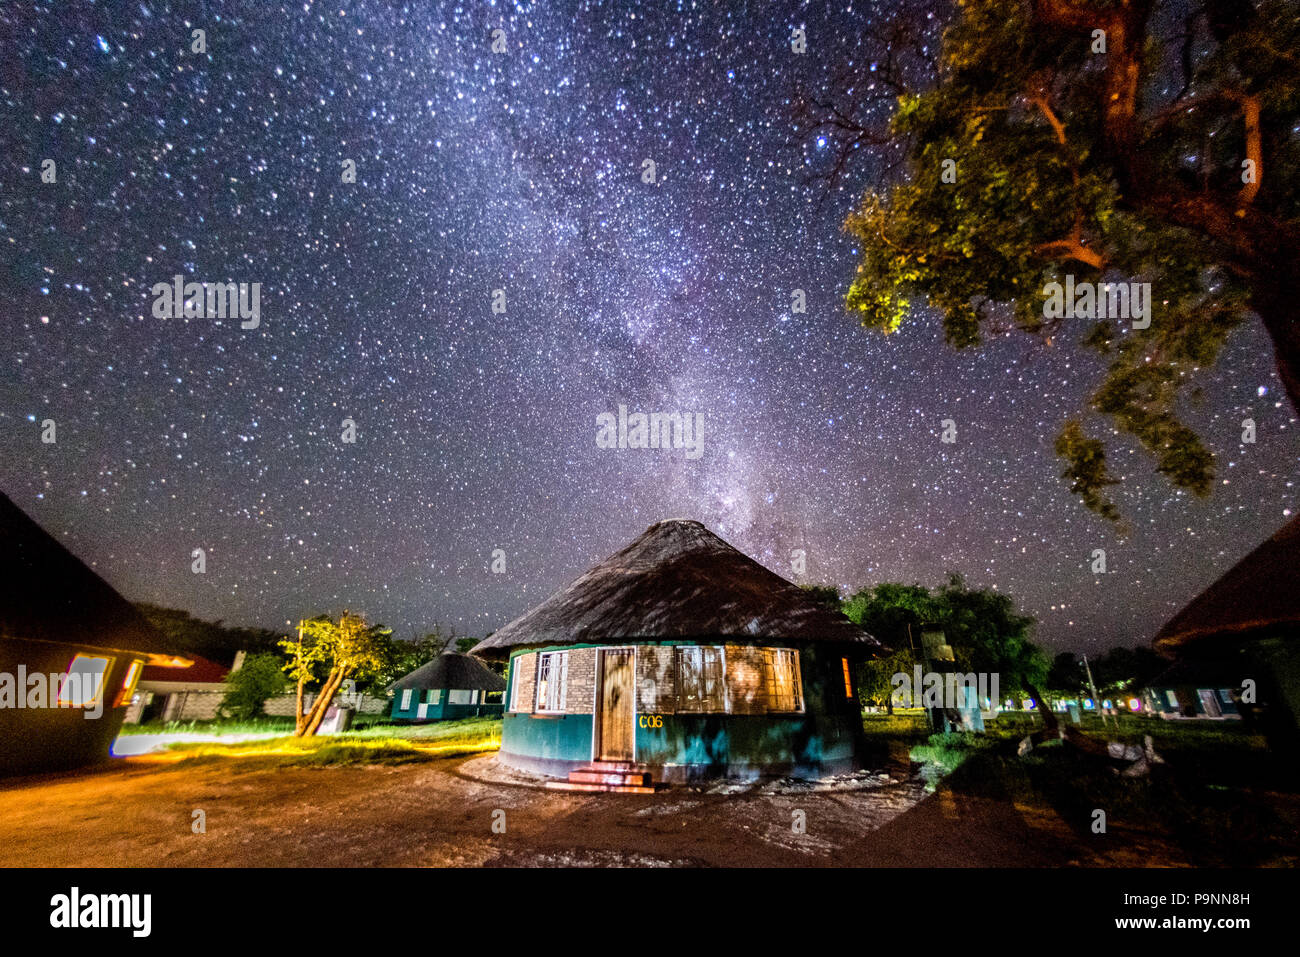 Die Nacht auf einem Campingplatz in den Hwange National Park bedeckt in Milliarden von Sternen. Hwange, Simbabwe Stockfoto